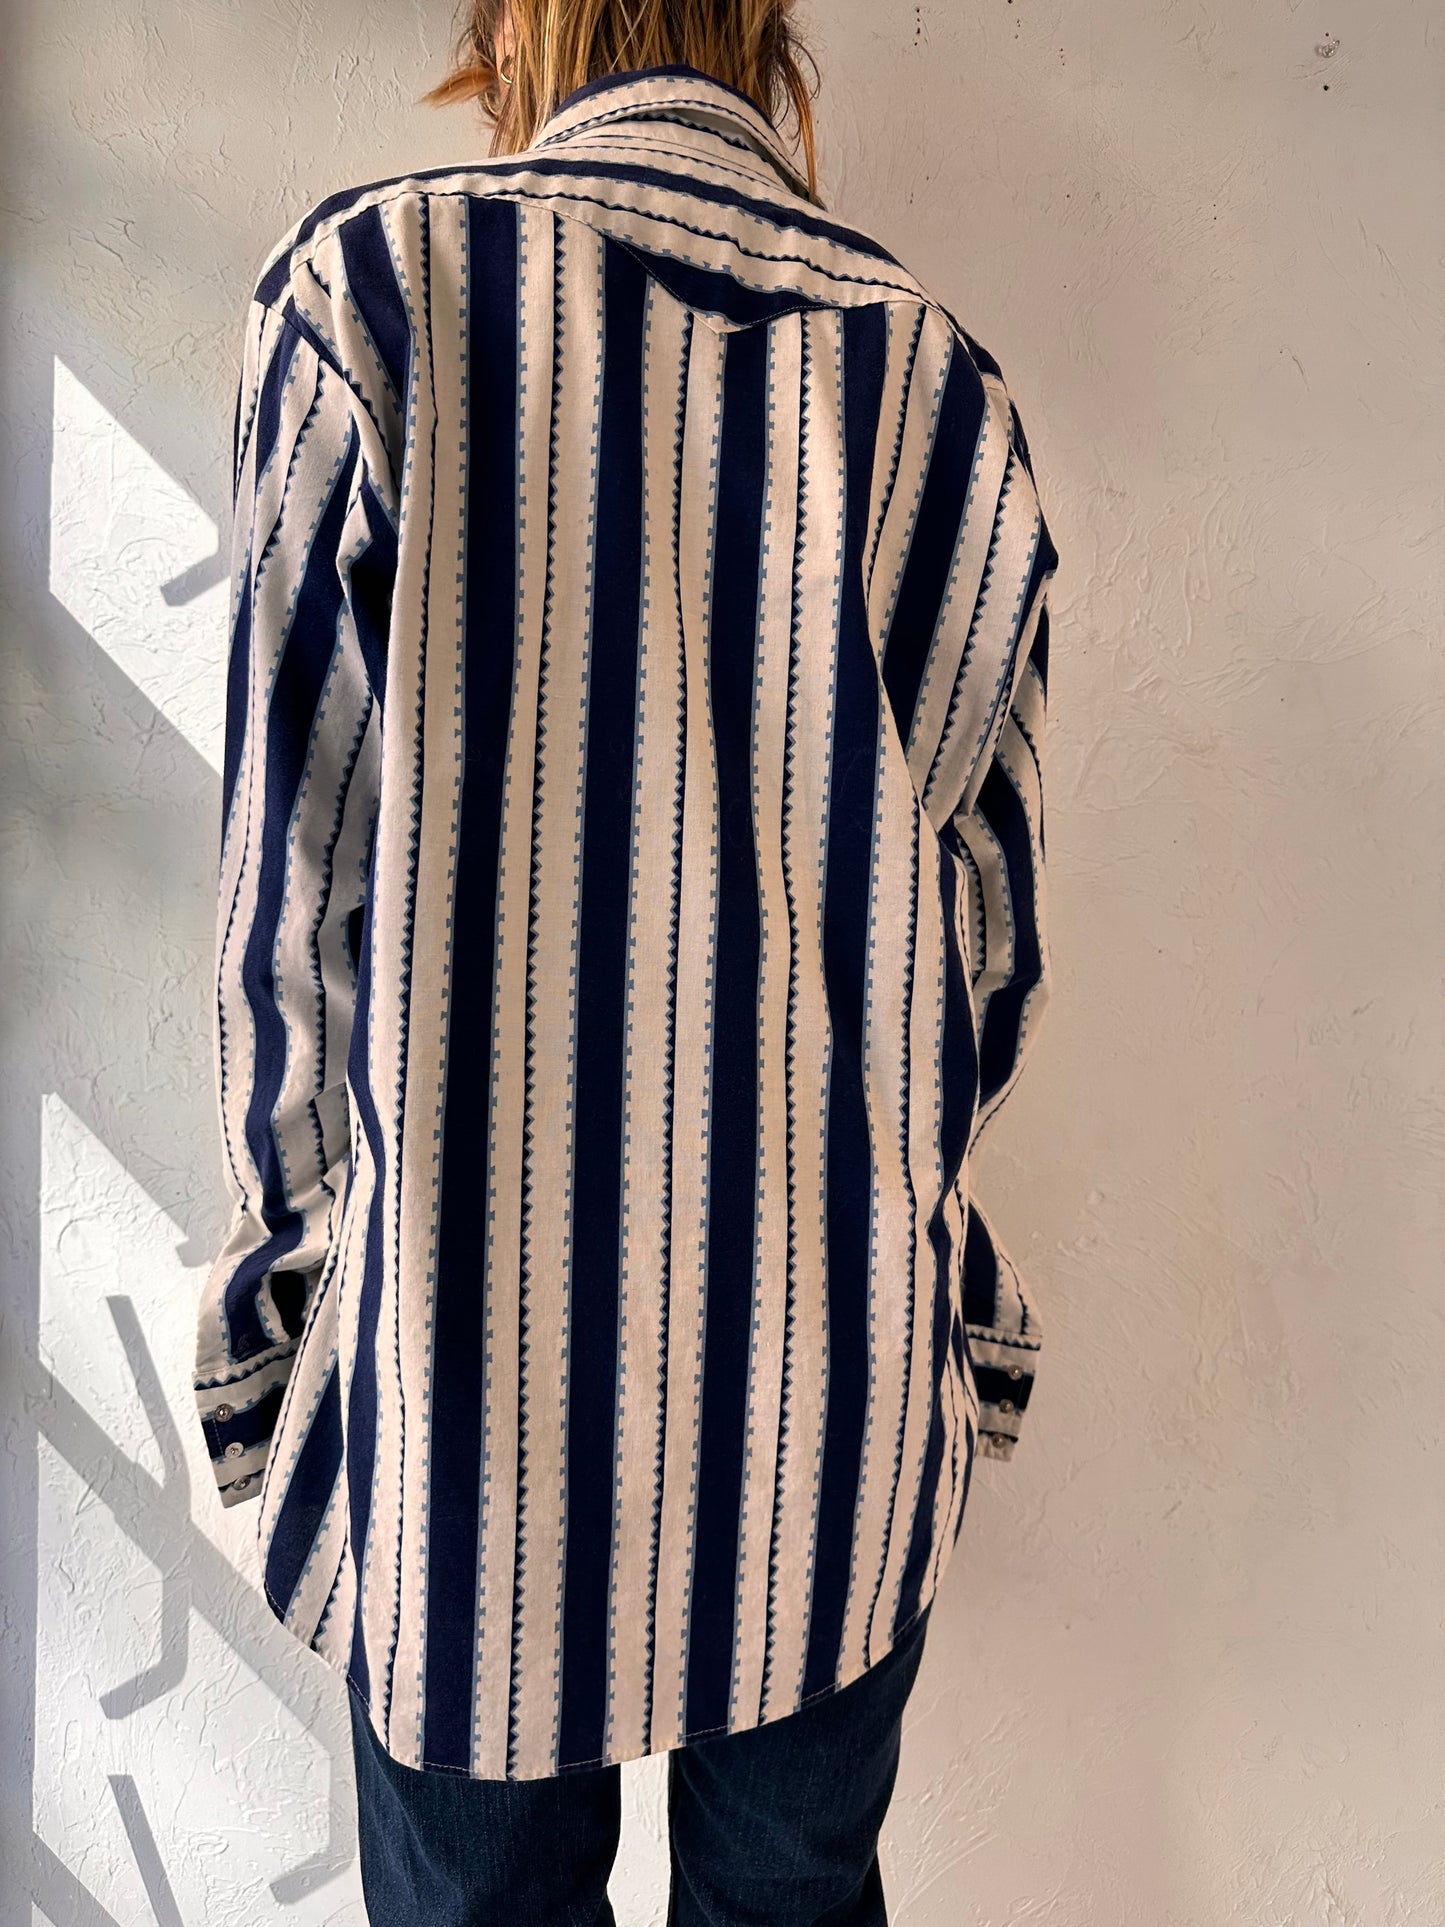 Vintage 'Panhandle Slim' Striped Western Pearl Snap Shirt / Large